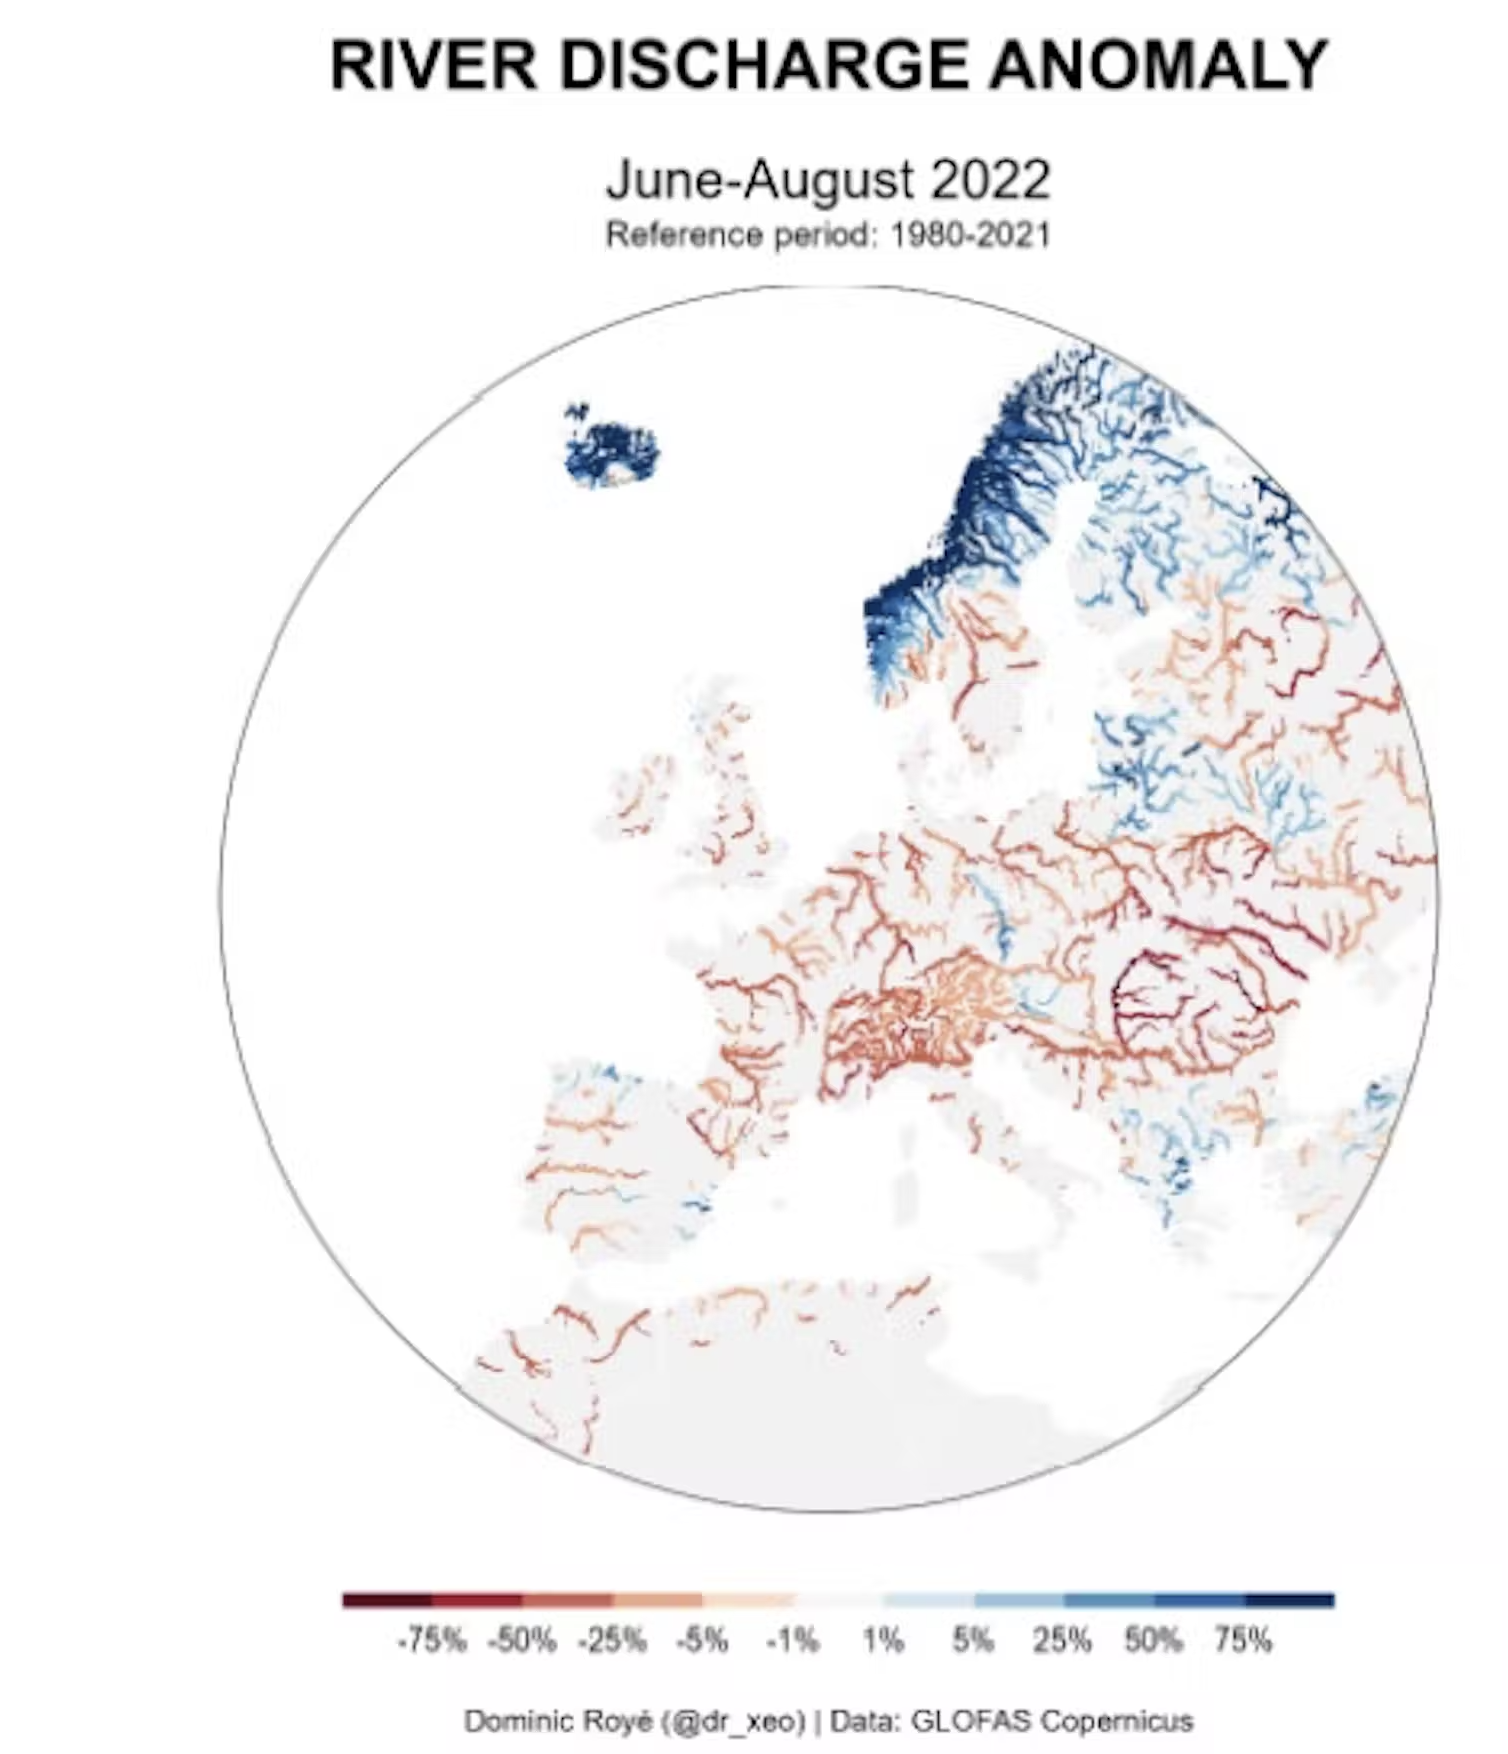 Desde junio hasta el 12 de agosto de 2022, hay una anomalía media negativa del caudal de los ríos del –29 %, llegando a ser inferior al –62 % en algunos puntos